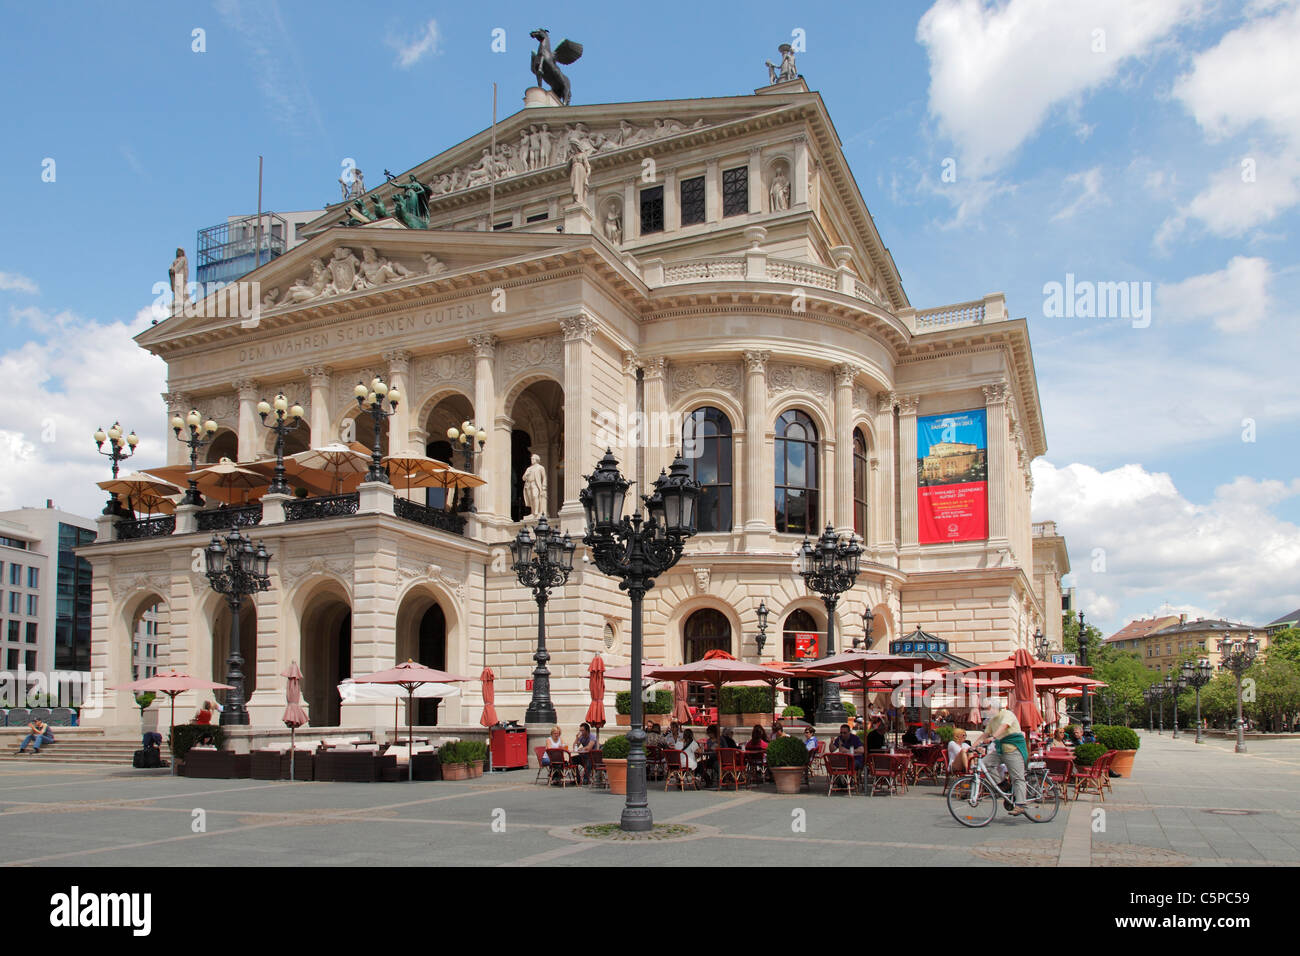 Alte Oper à Francfort-sur-Main, Allemagne ; Alte Oper de Francfort am Main Banque D'Images